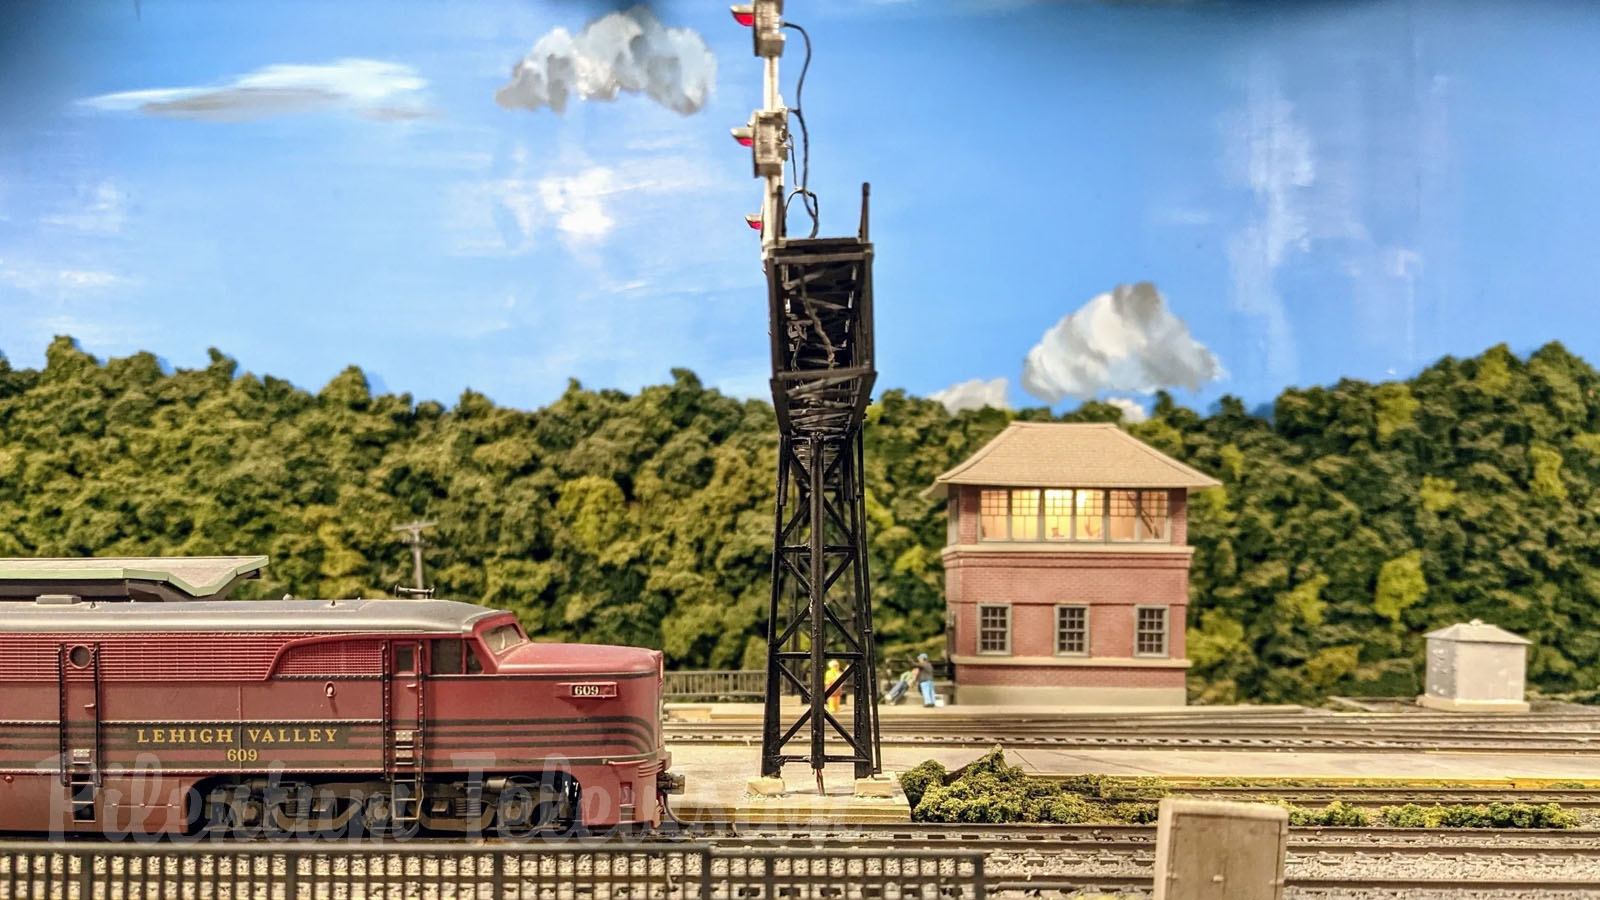 Musée du modélisme ferroviaire Lehigh & Keystone Valley - l’un des plus grands réseaux ferroviaires des États-Unis à l’échelle HO